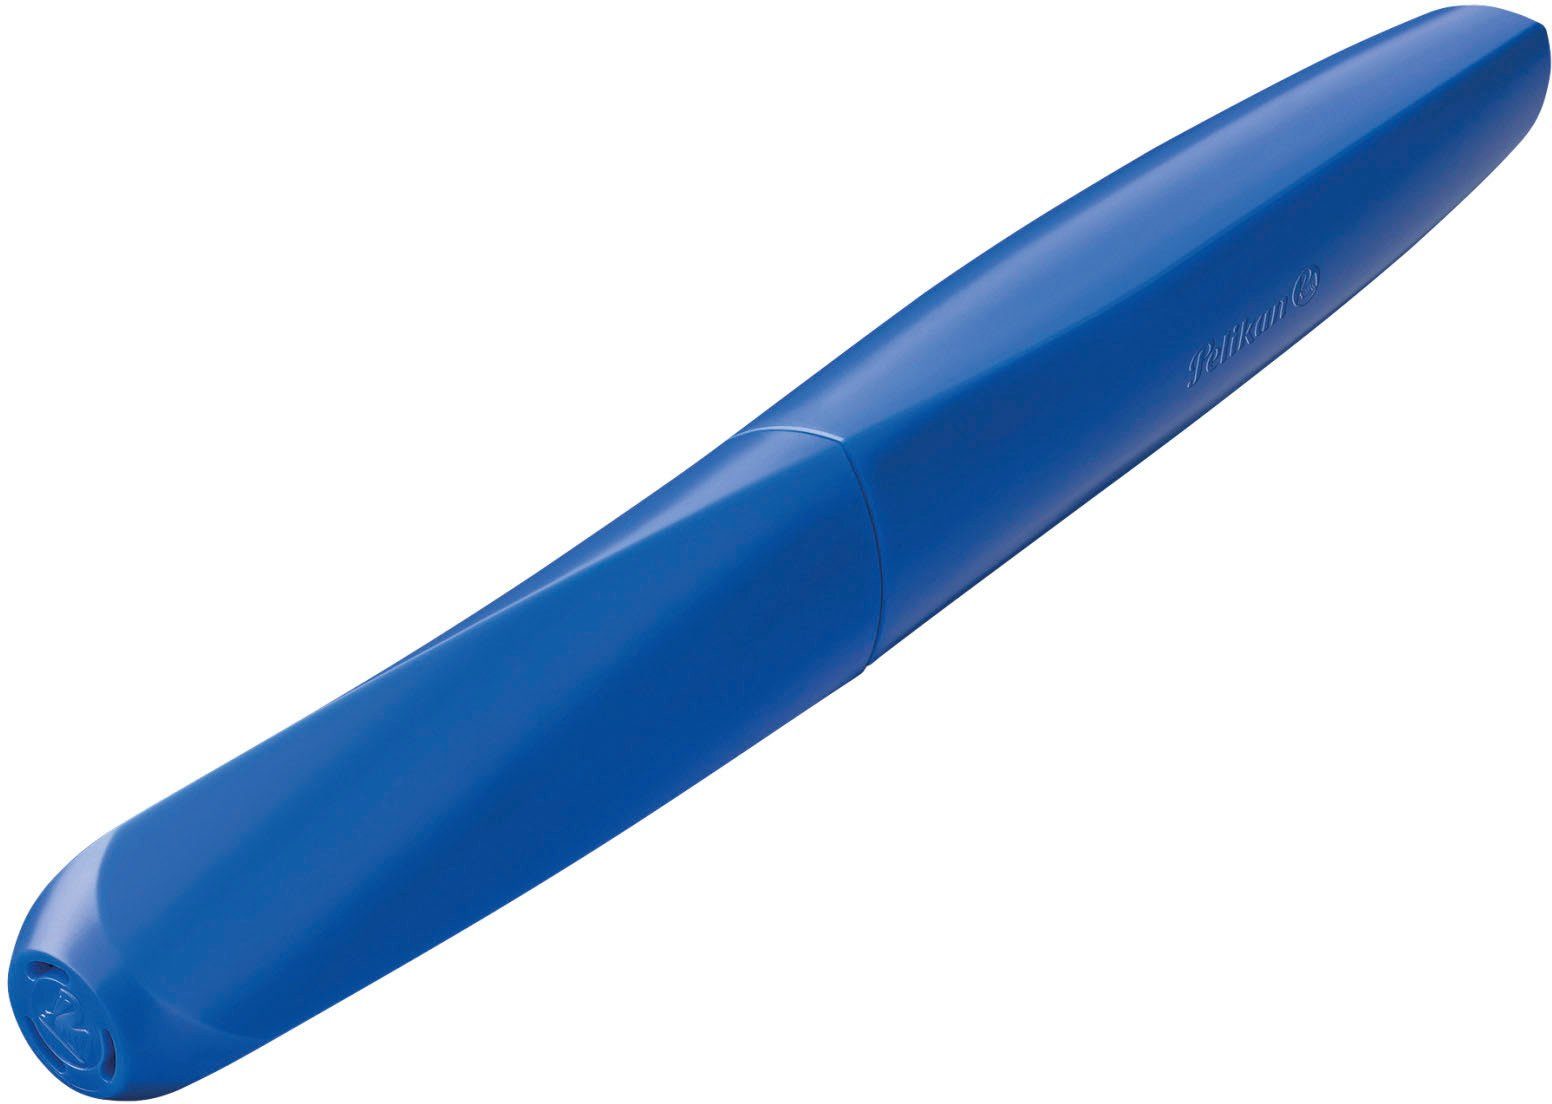 Pelikan Füller M, Twist®, Made Feder in Blue, Germany Deep